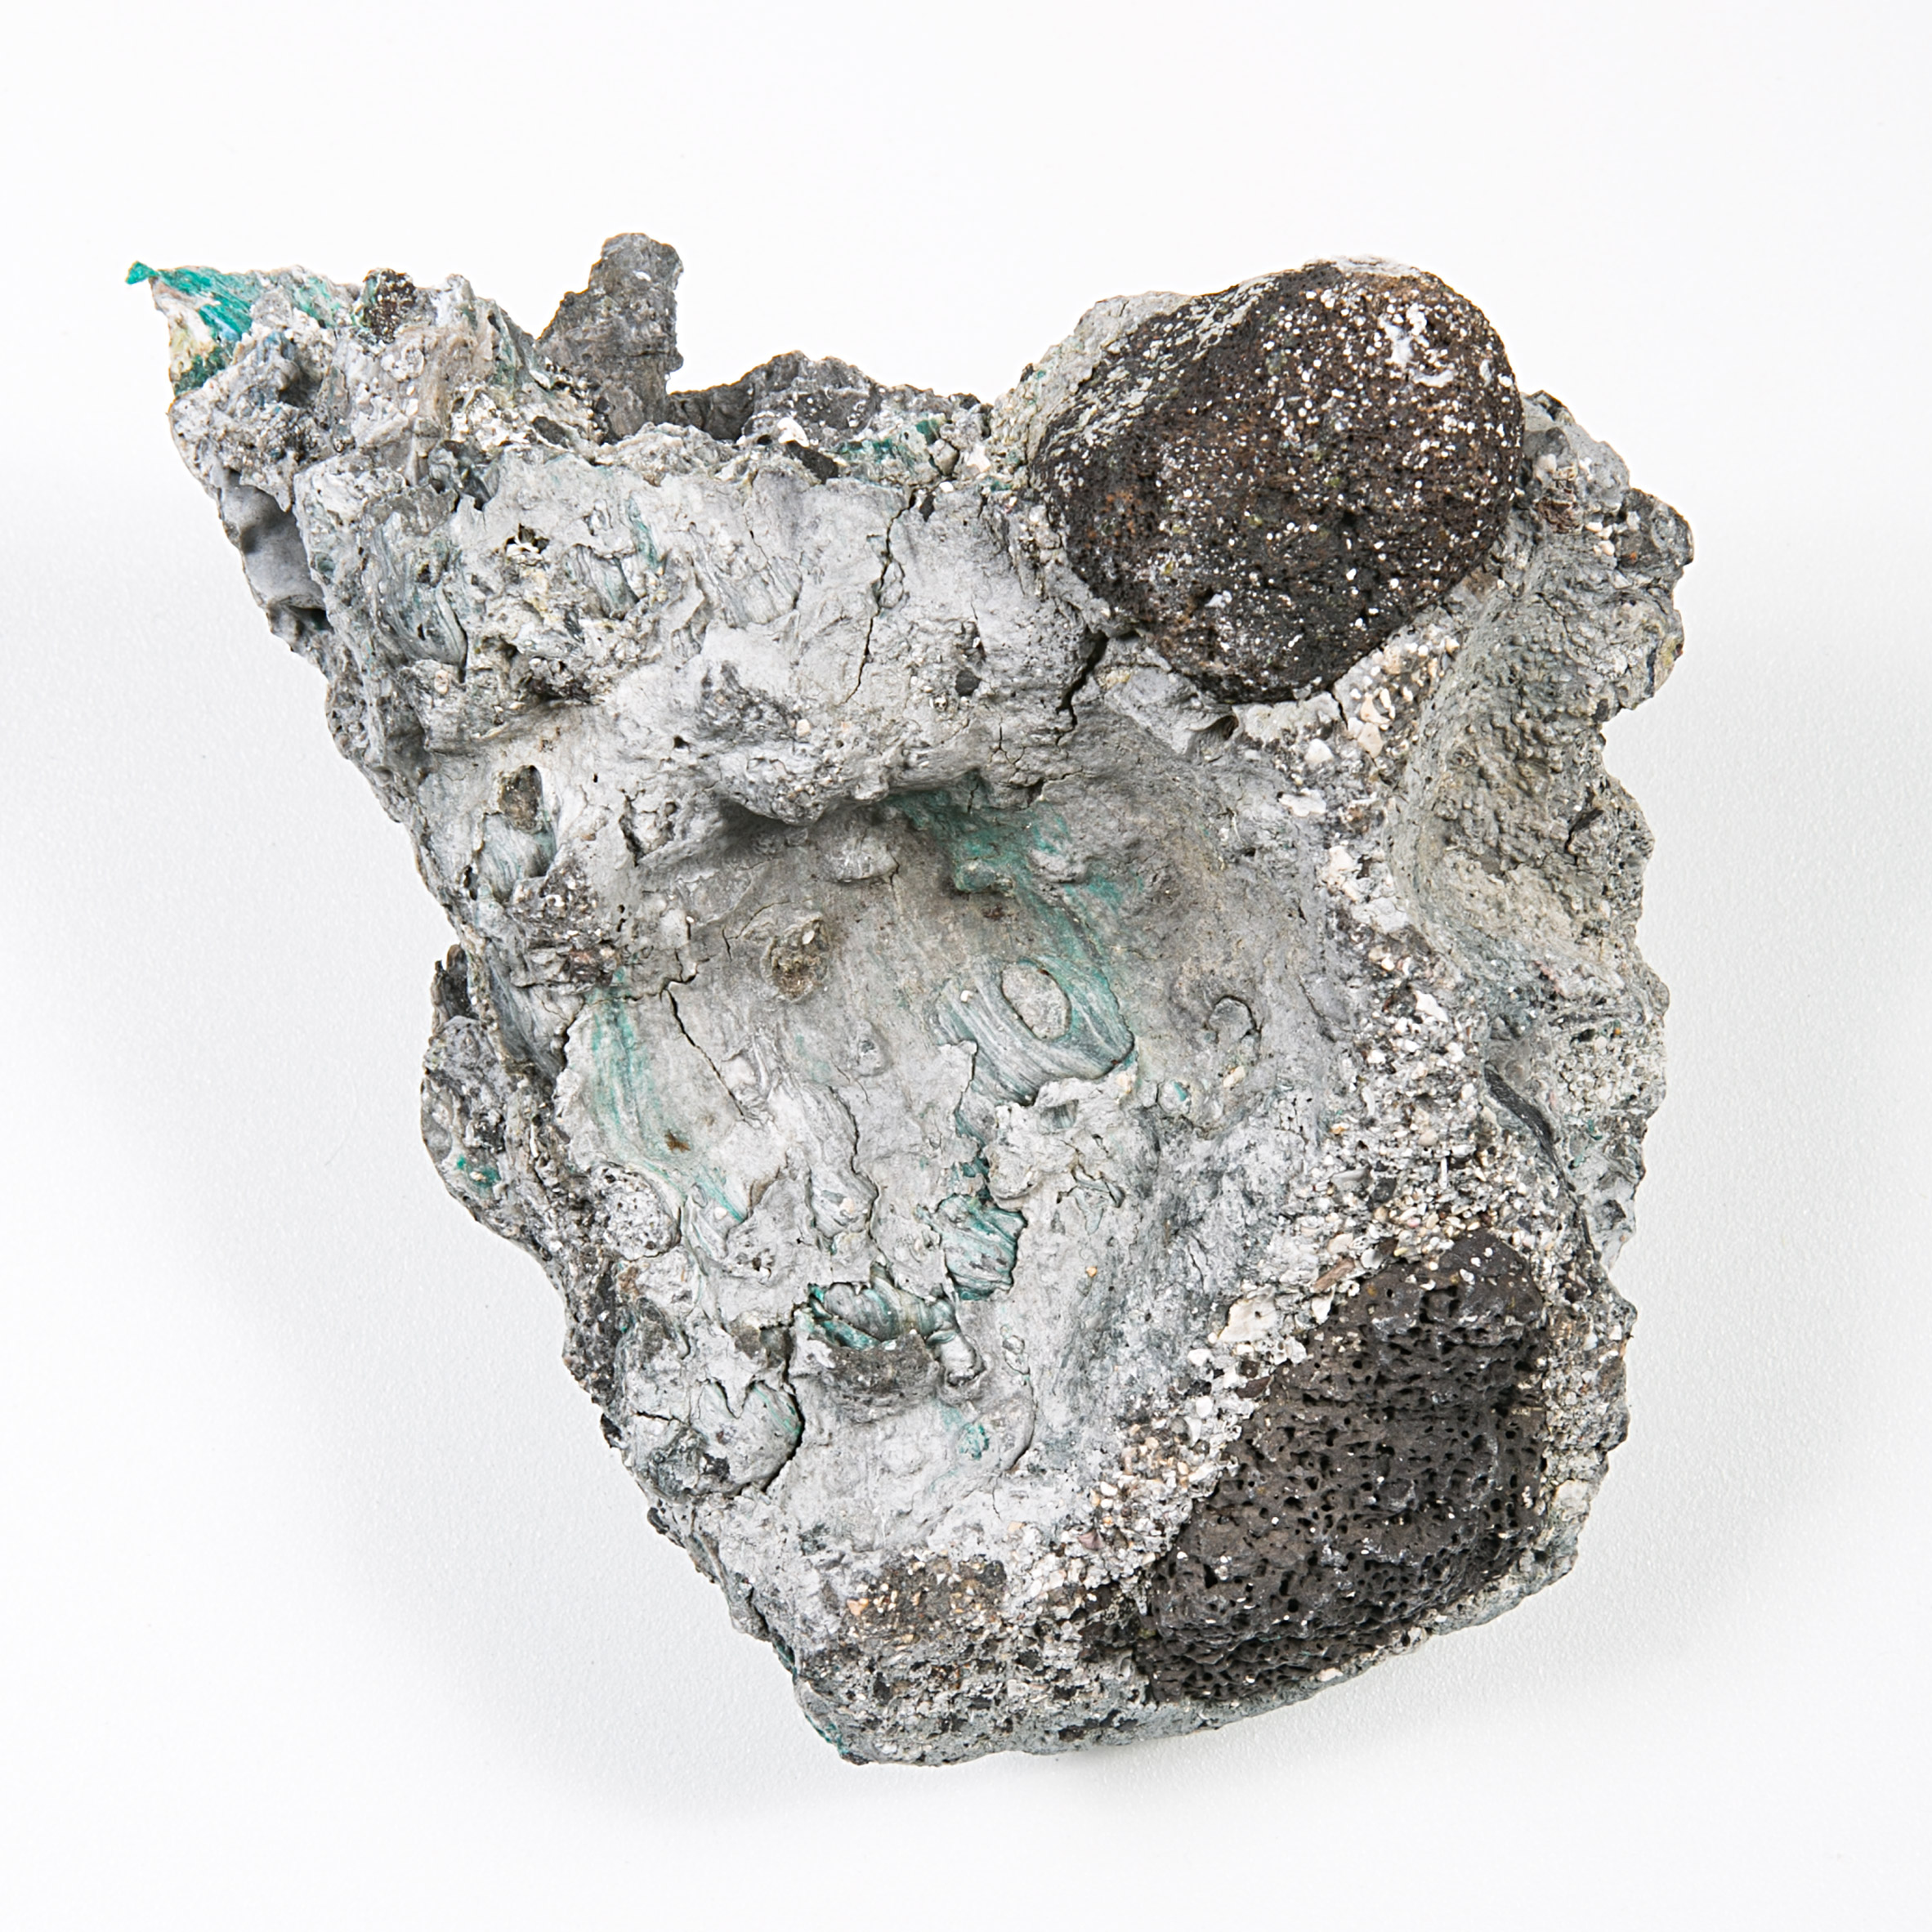 Kelly Jazvac presents plastiglomerate objects at Milan Triennale